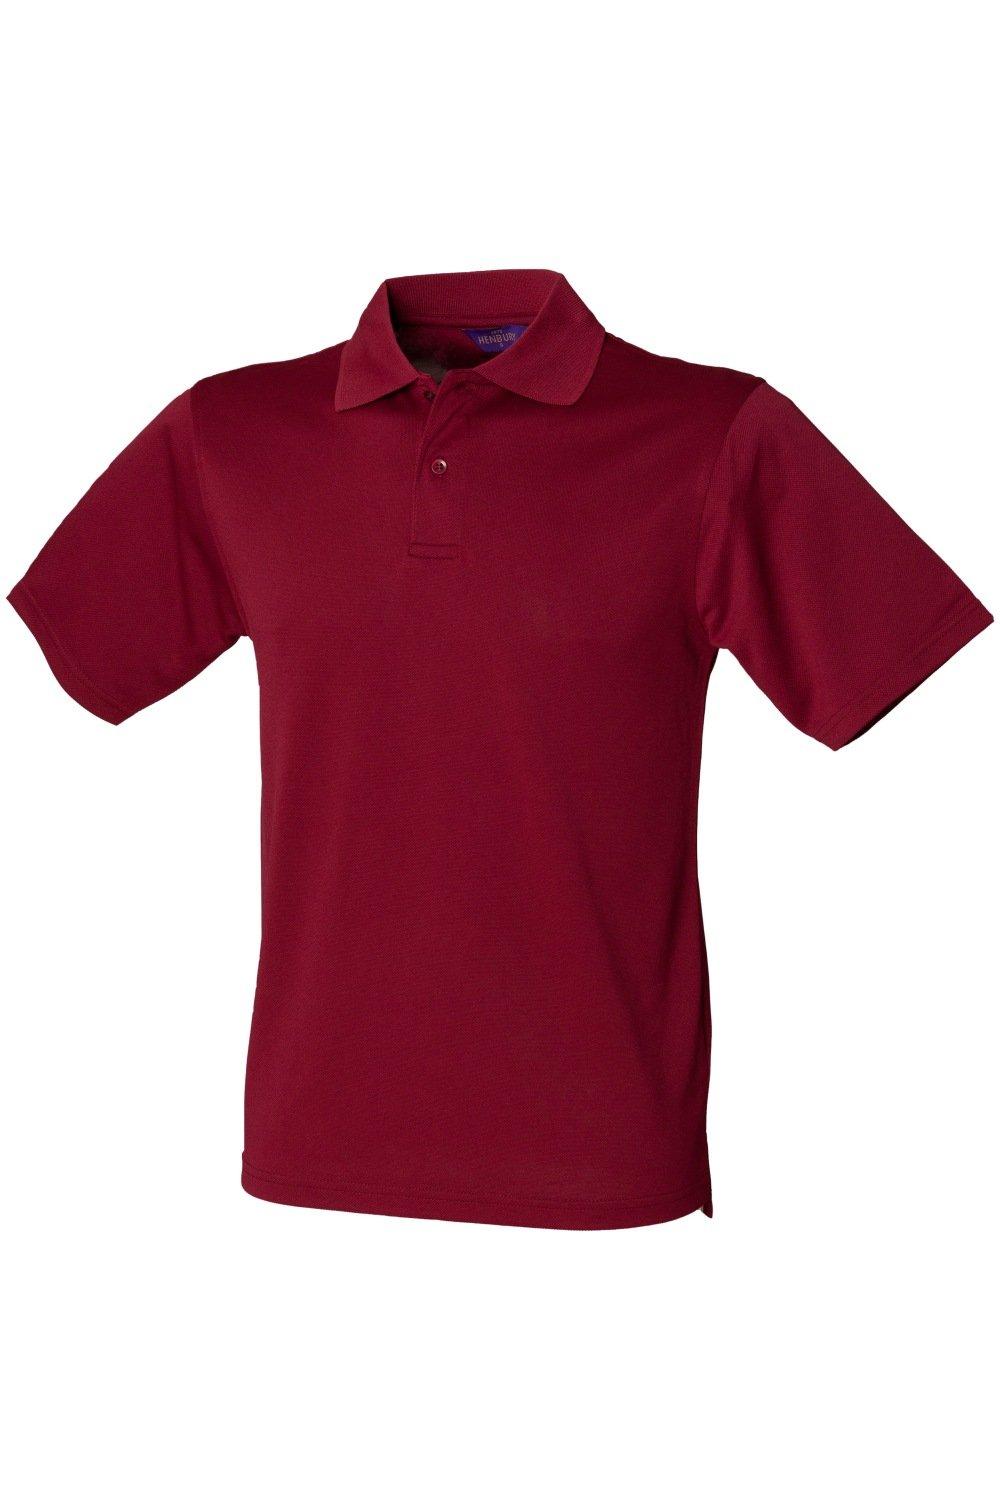 Рубашка поло Coolplus из пике Henbury, красный рубашка поло coolplus из пике henbury черный